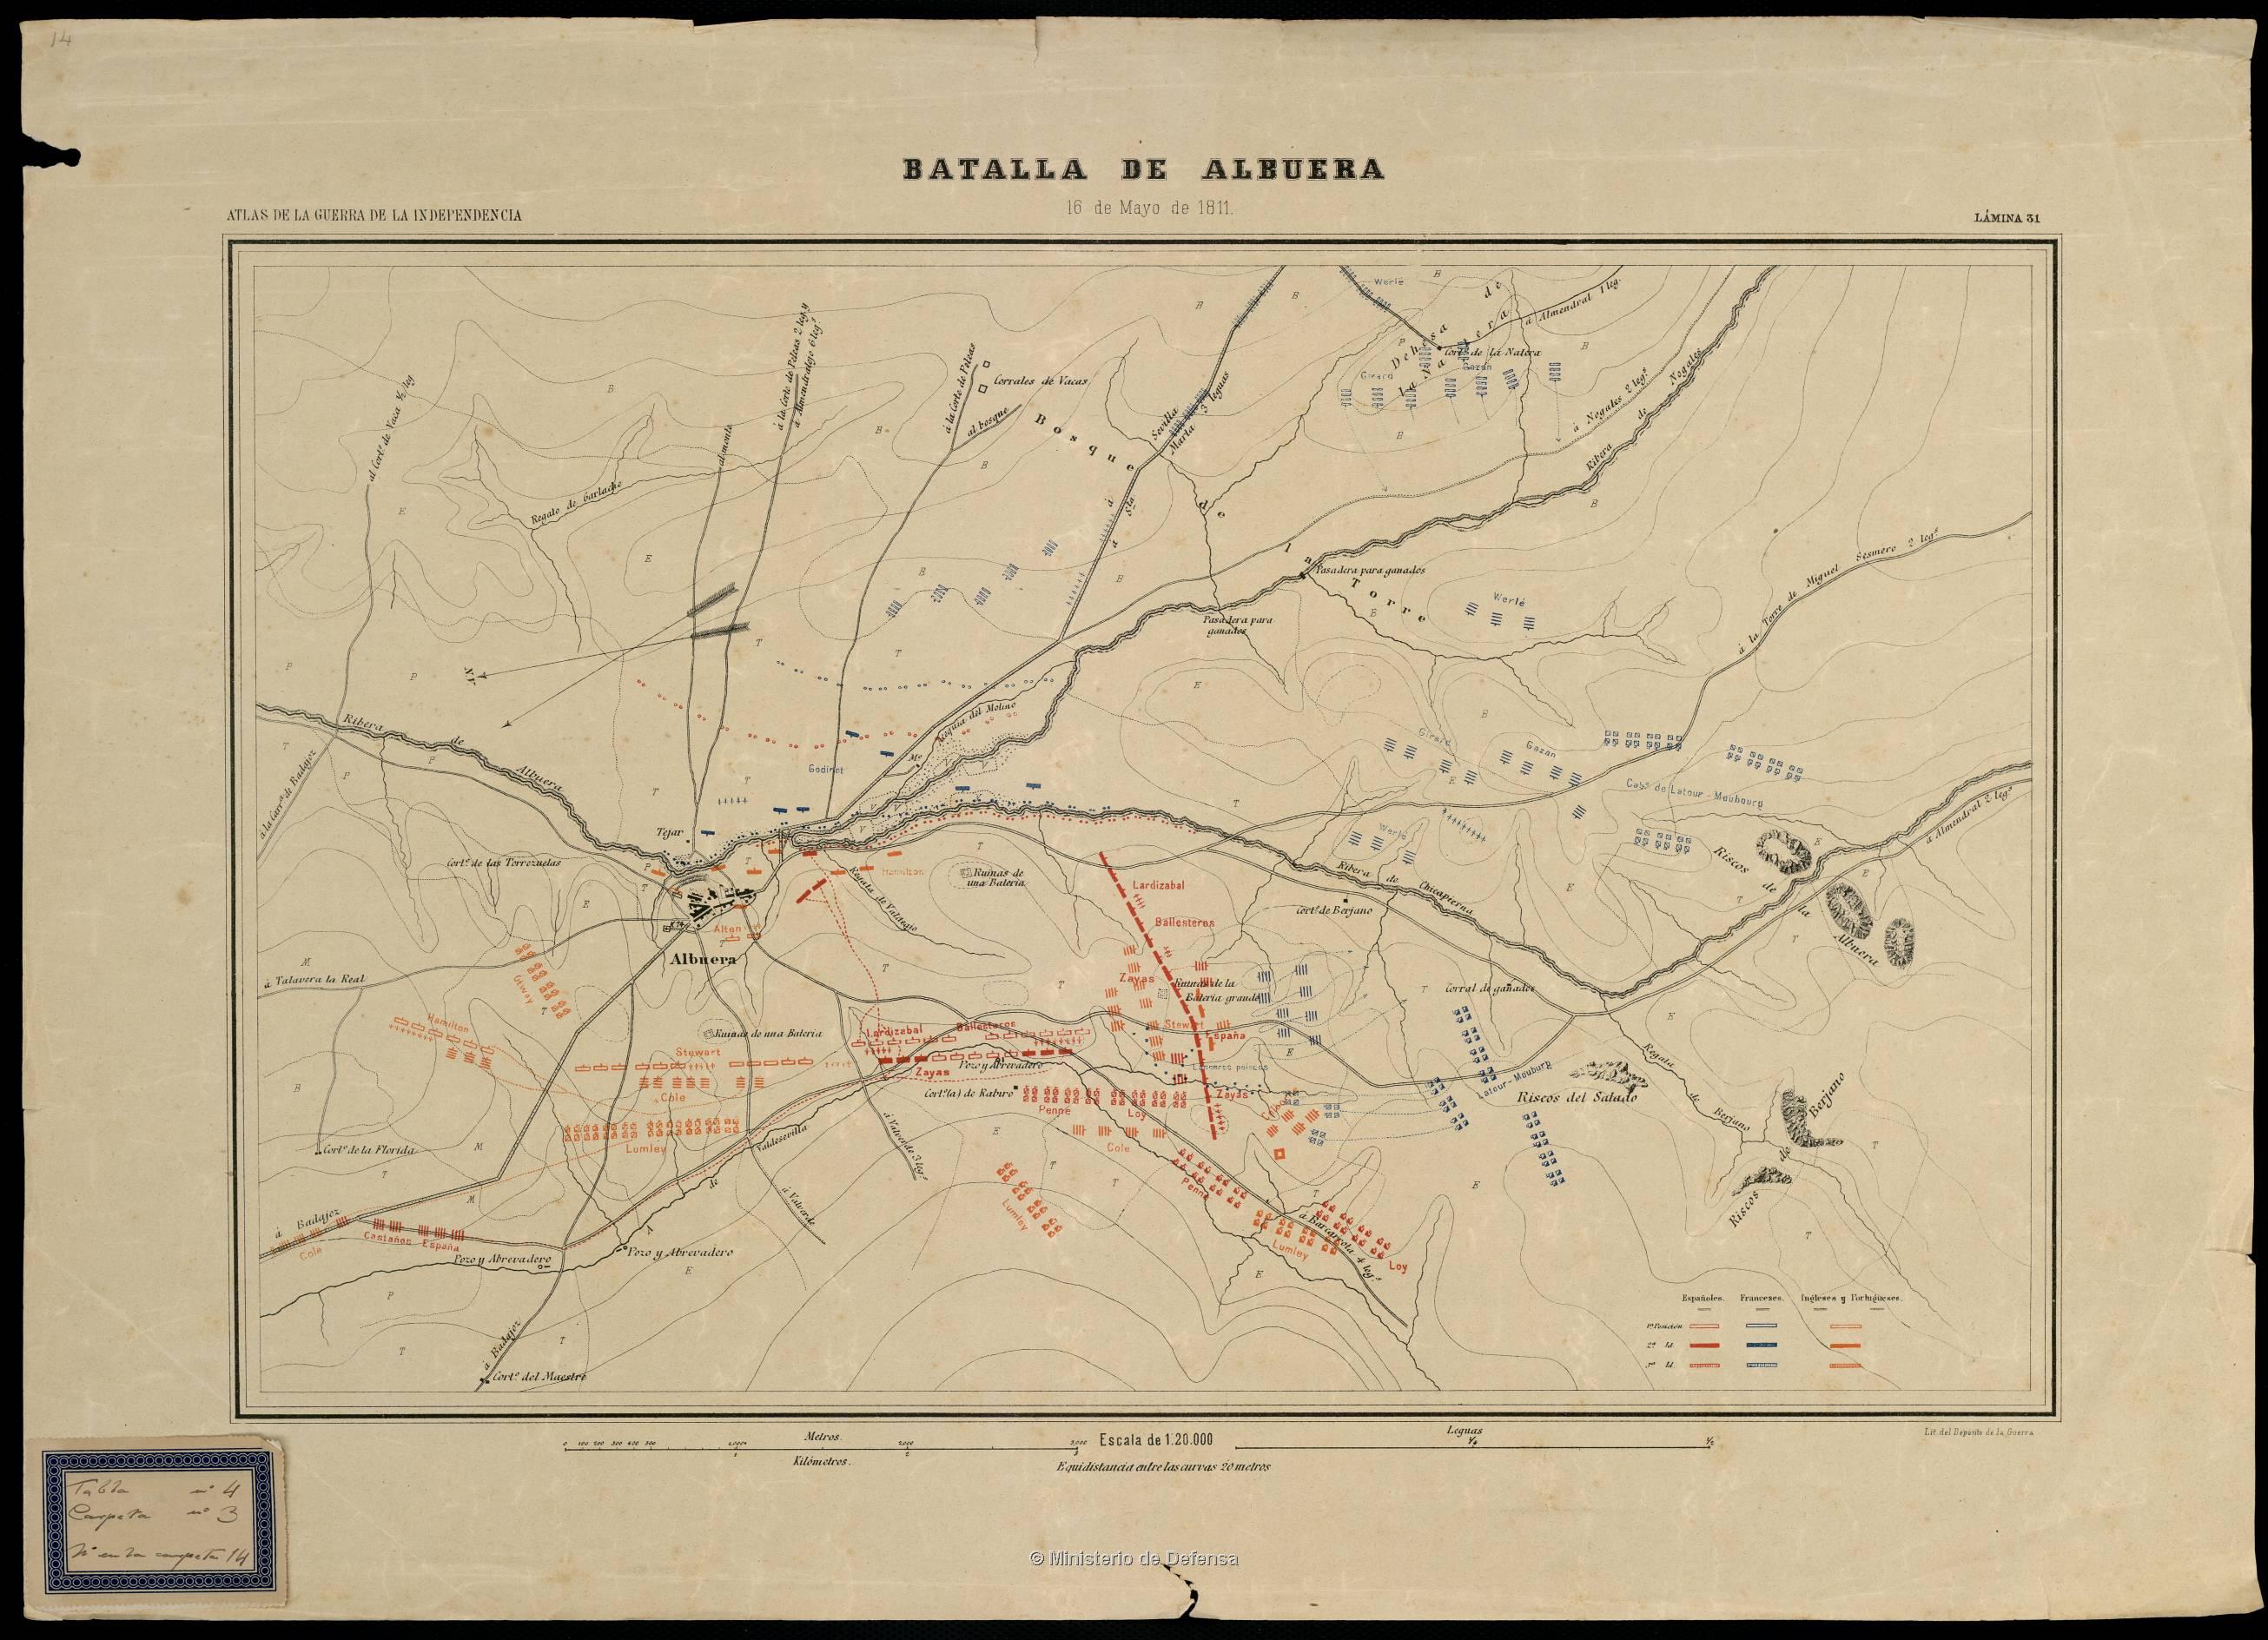 Batalla de Albuera ‎ : 16 de Mayo de 1811